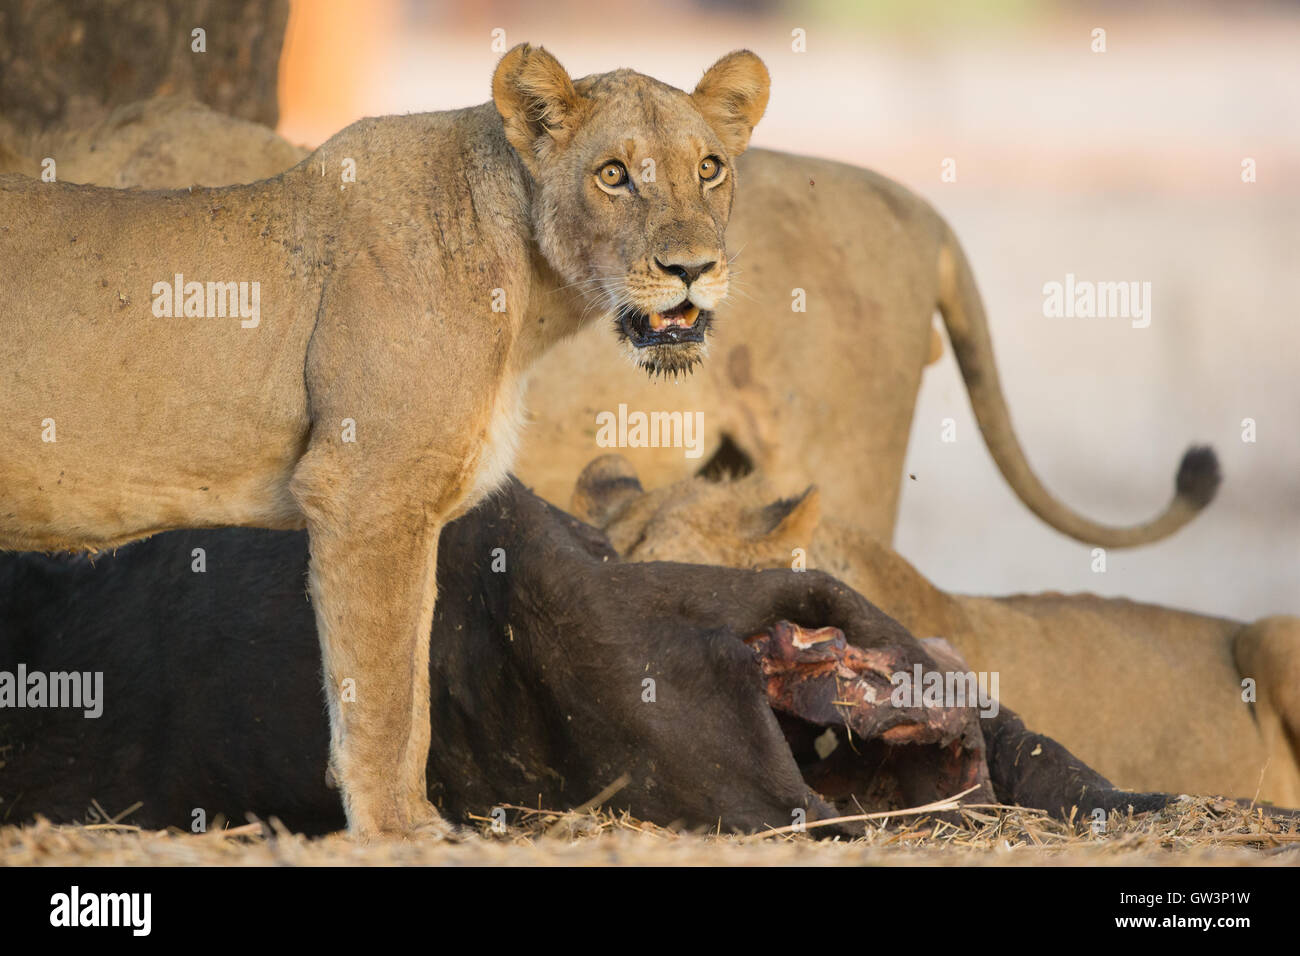 León (Panthera leo) rugiendo) en pie por matar el búfalo africano (Syncerus caffer) mirando la cámara Foto de stock